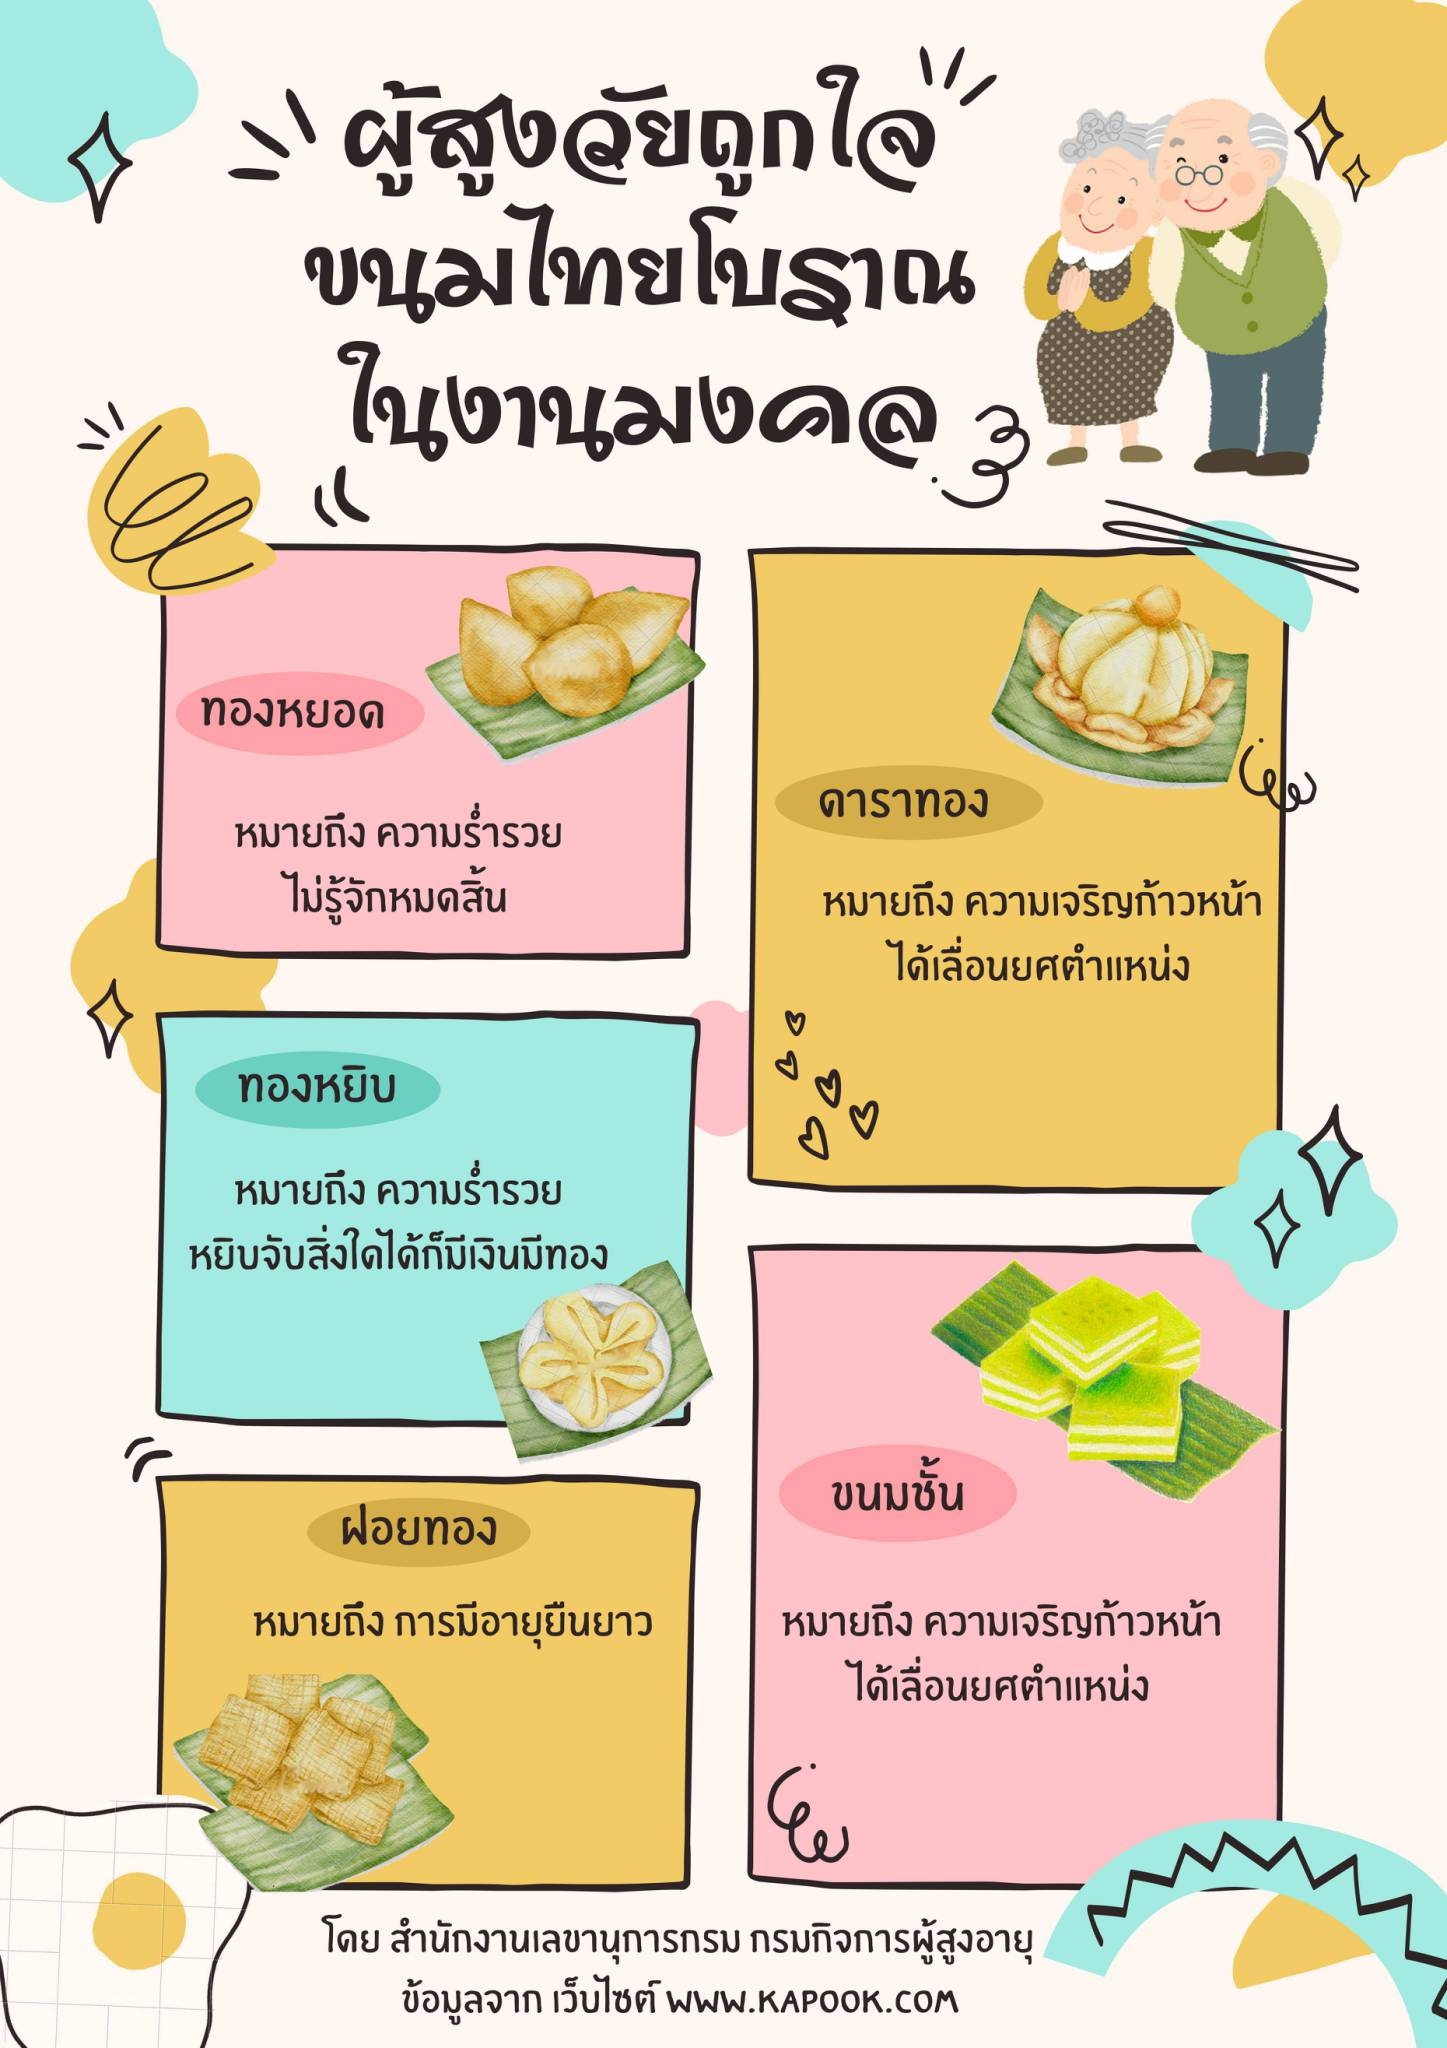 ผู้สูงวัย ถูกใจขนมไทยโบราณ ในงานมงคล